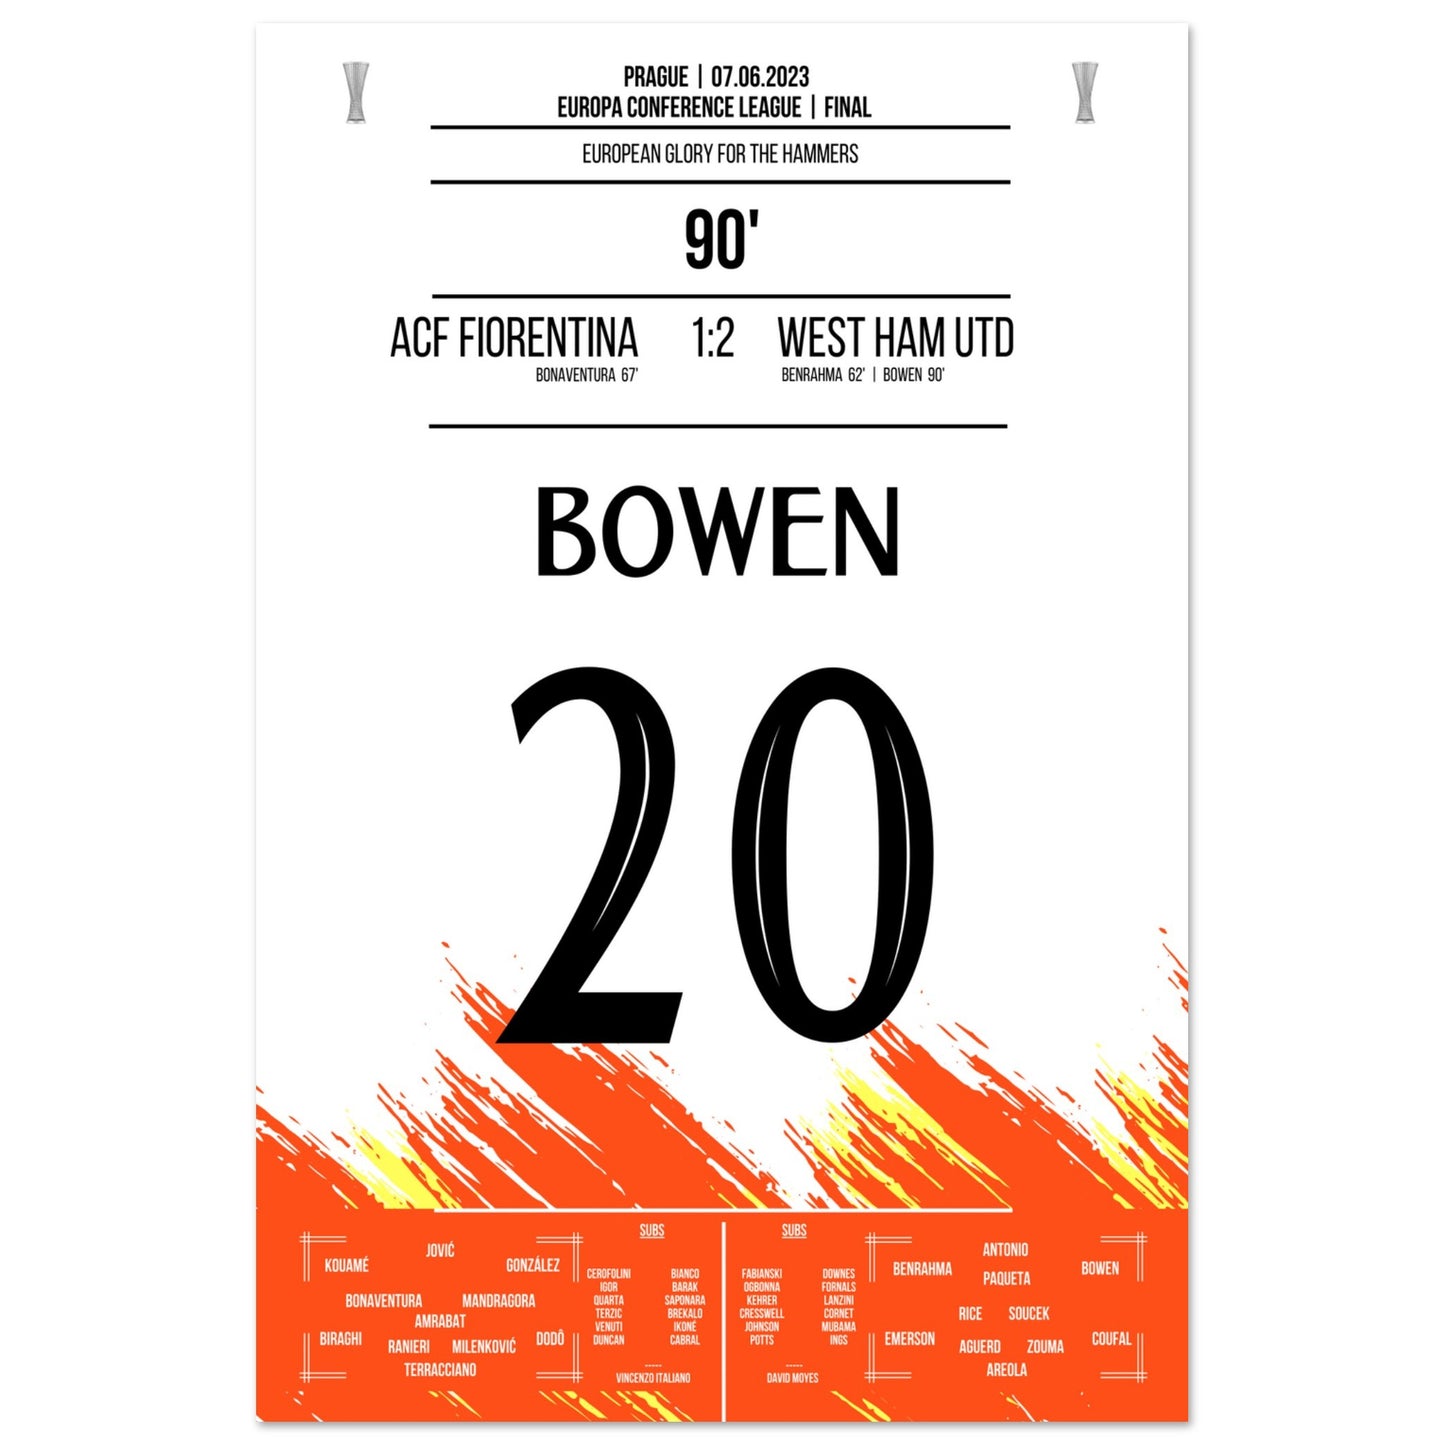 Bowen's Last-Minute Siegtreffer zum Europapokal Triumph für die "Hammers" 60x90-cm-24x36-Ohne-Rahmen